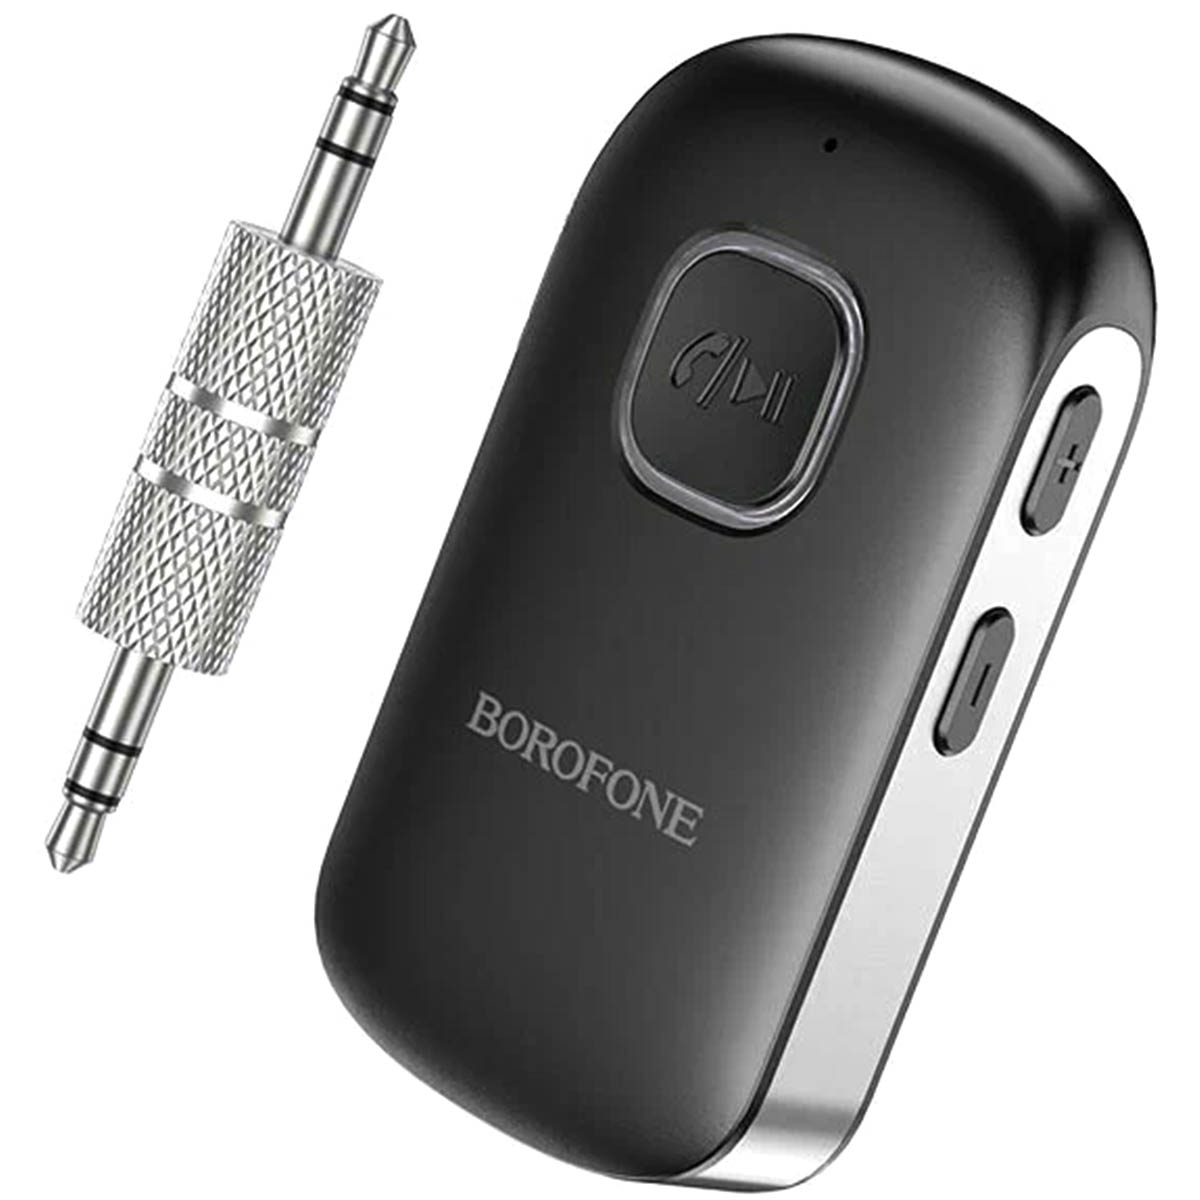 Беспроводной музыкальный приемник BOROFONE BC42, адаптер Bluetooth AUX, ресивер BT-Receiver, цвет черный